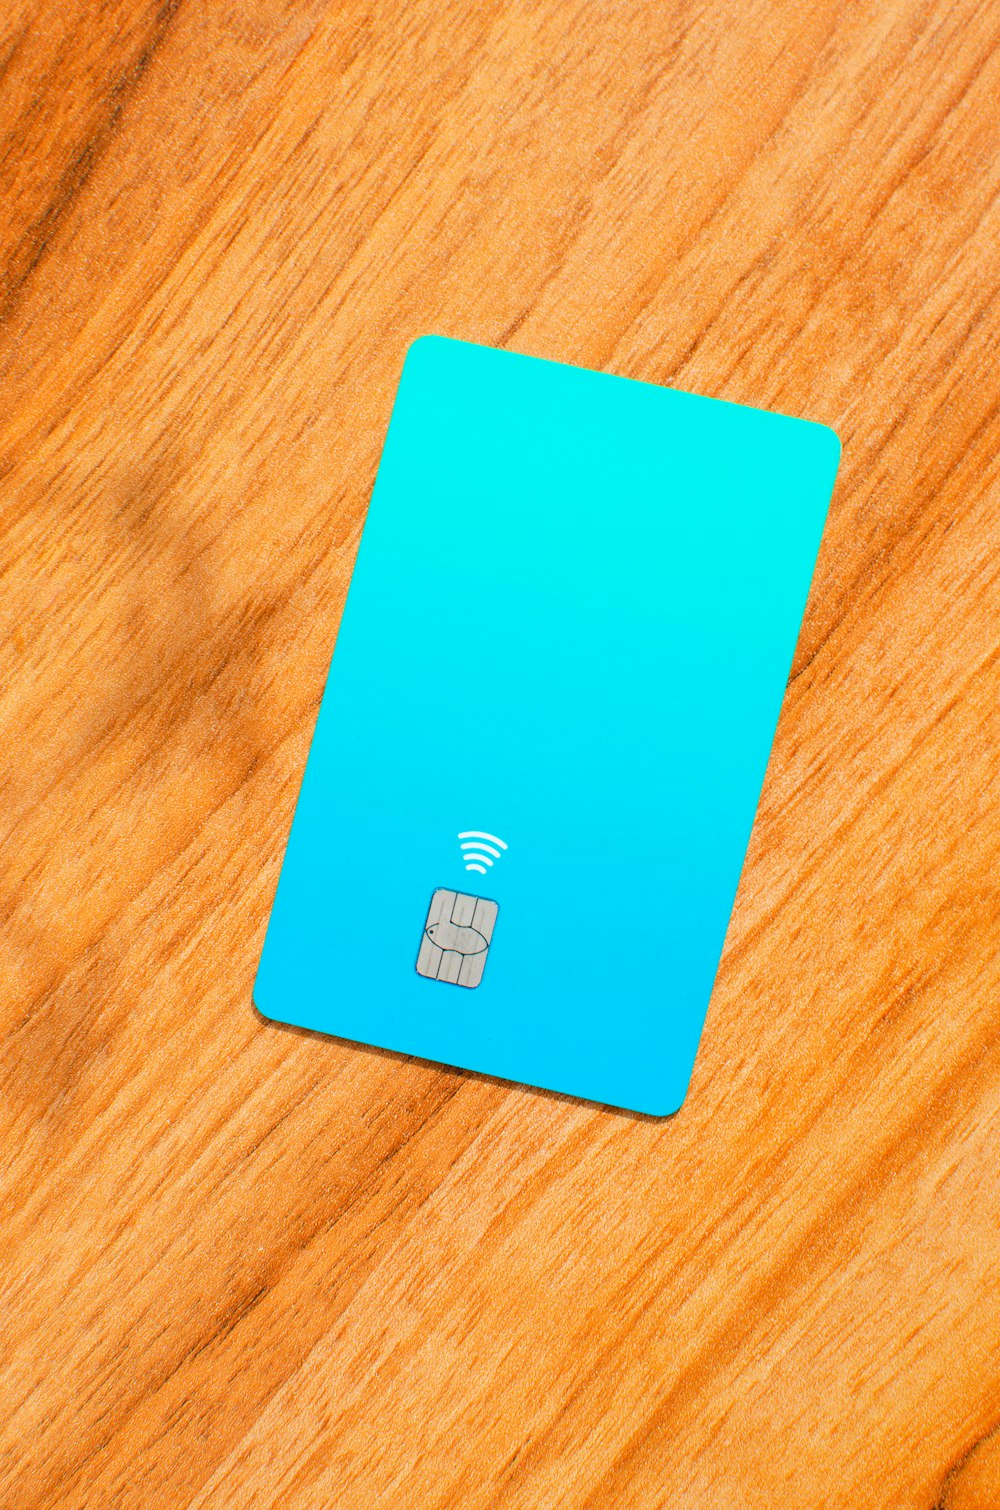 une carte SIM bleue posée sur une table en bois